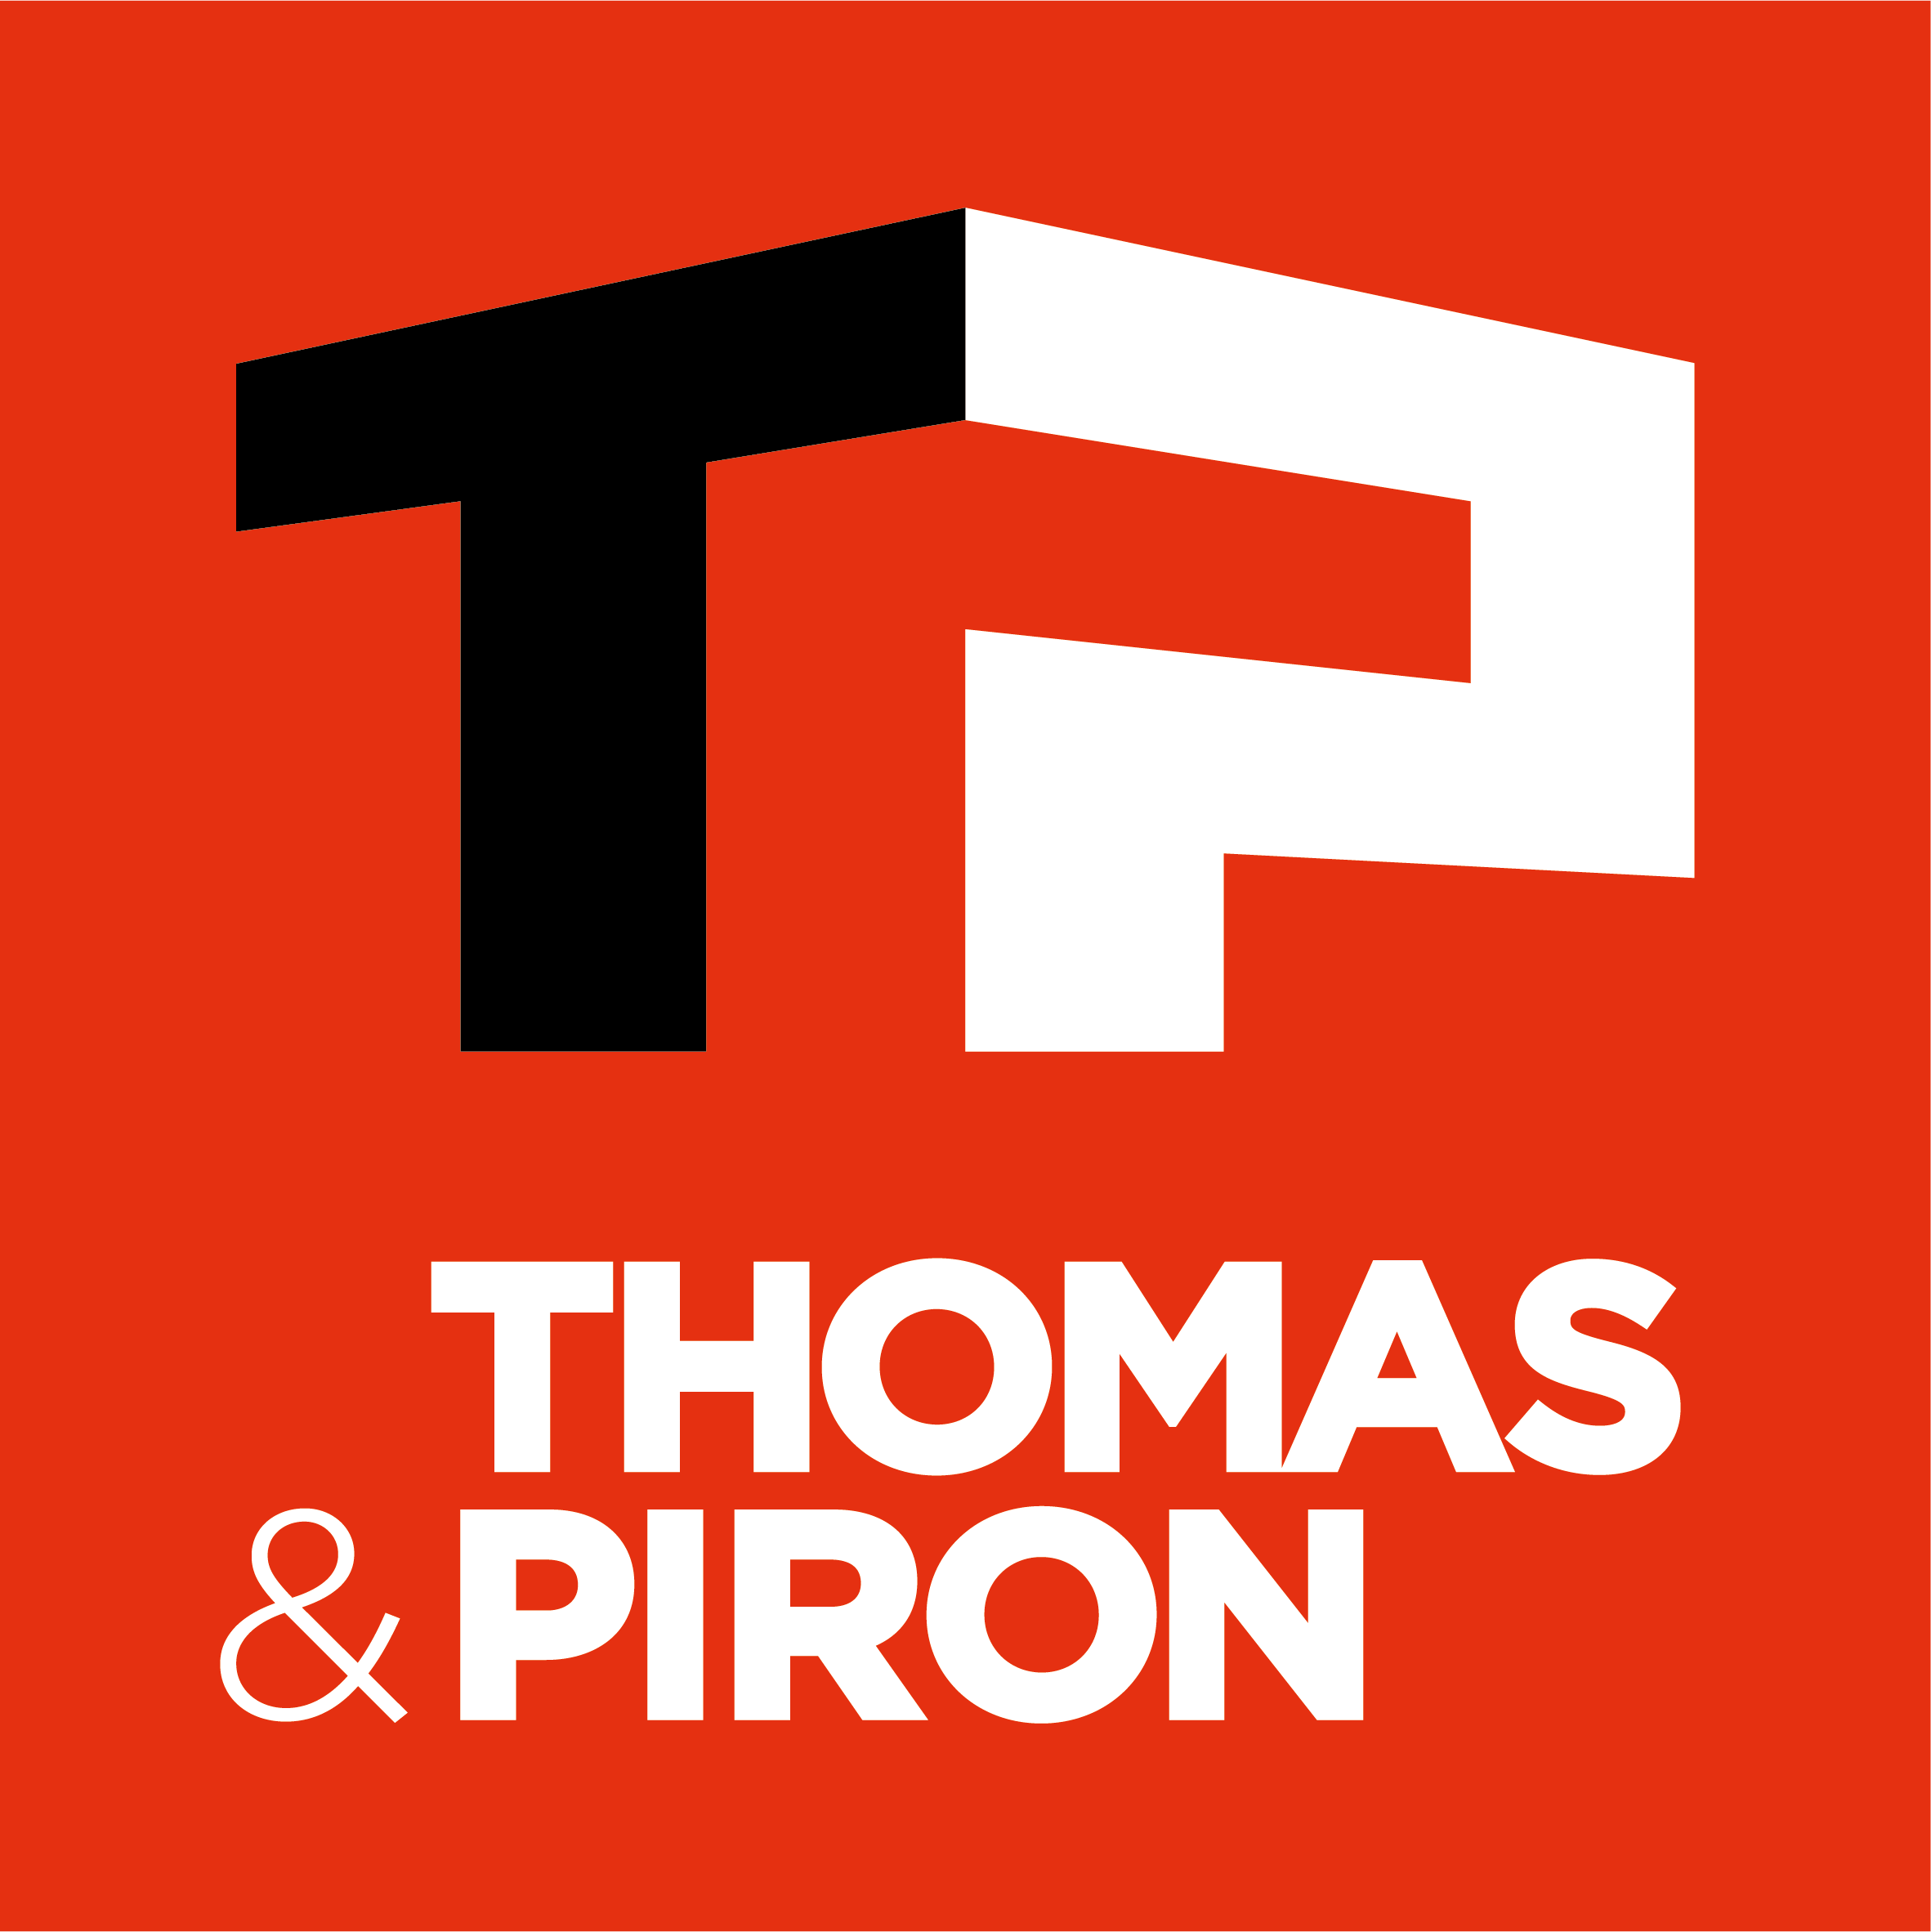 THOMAS & PIRON logo